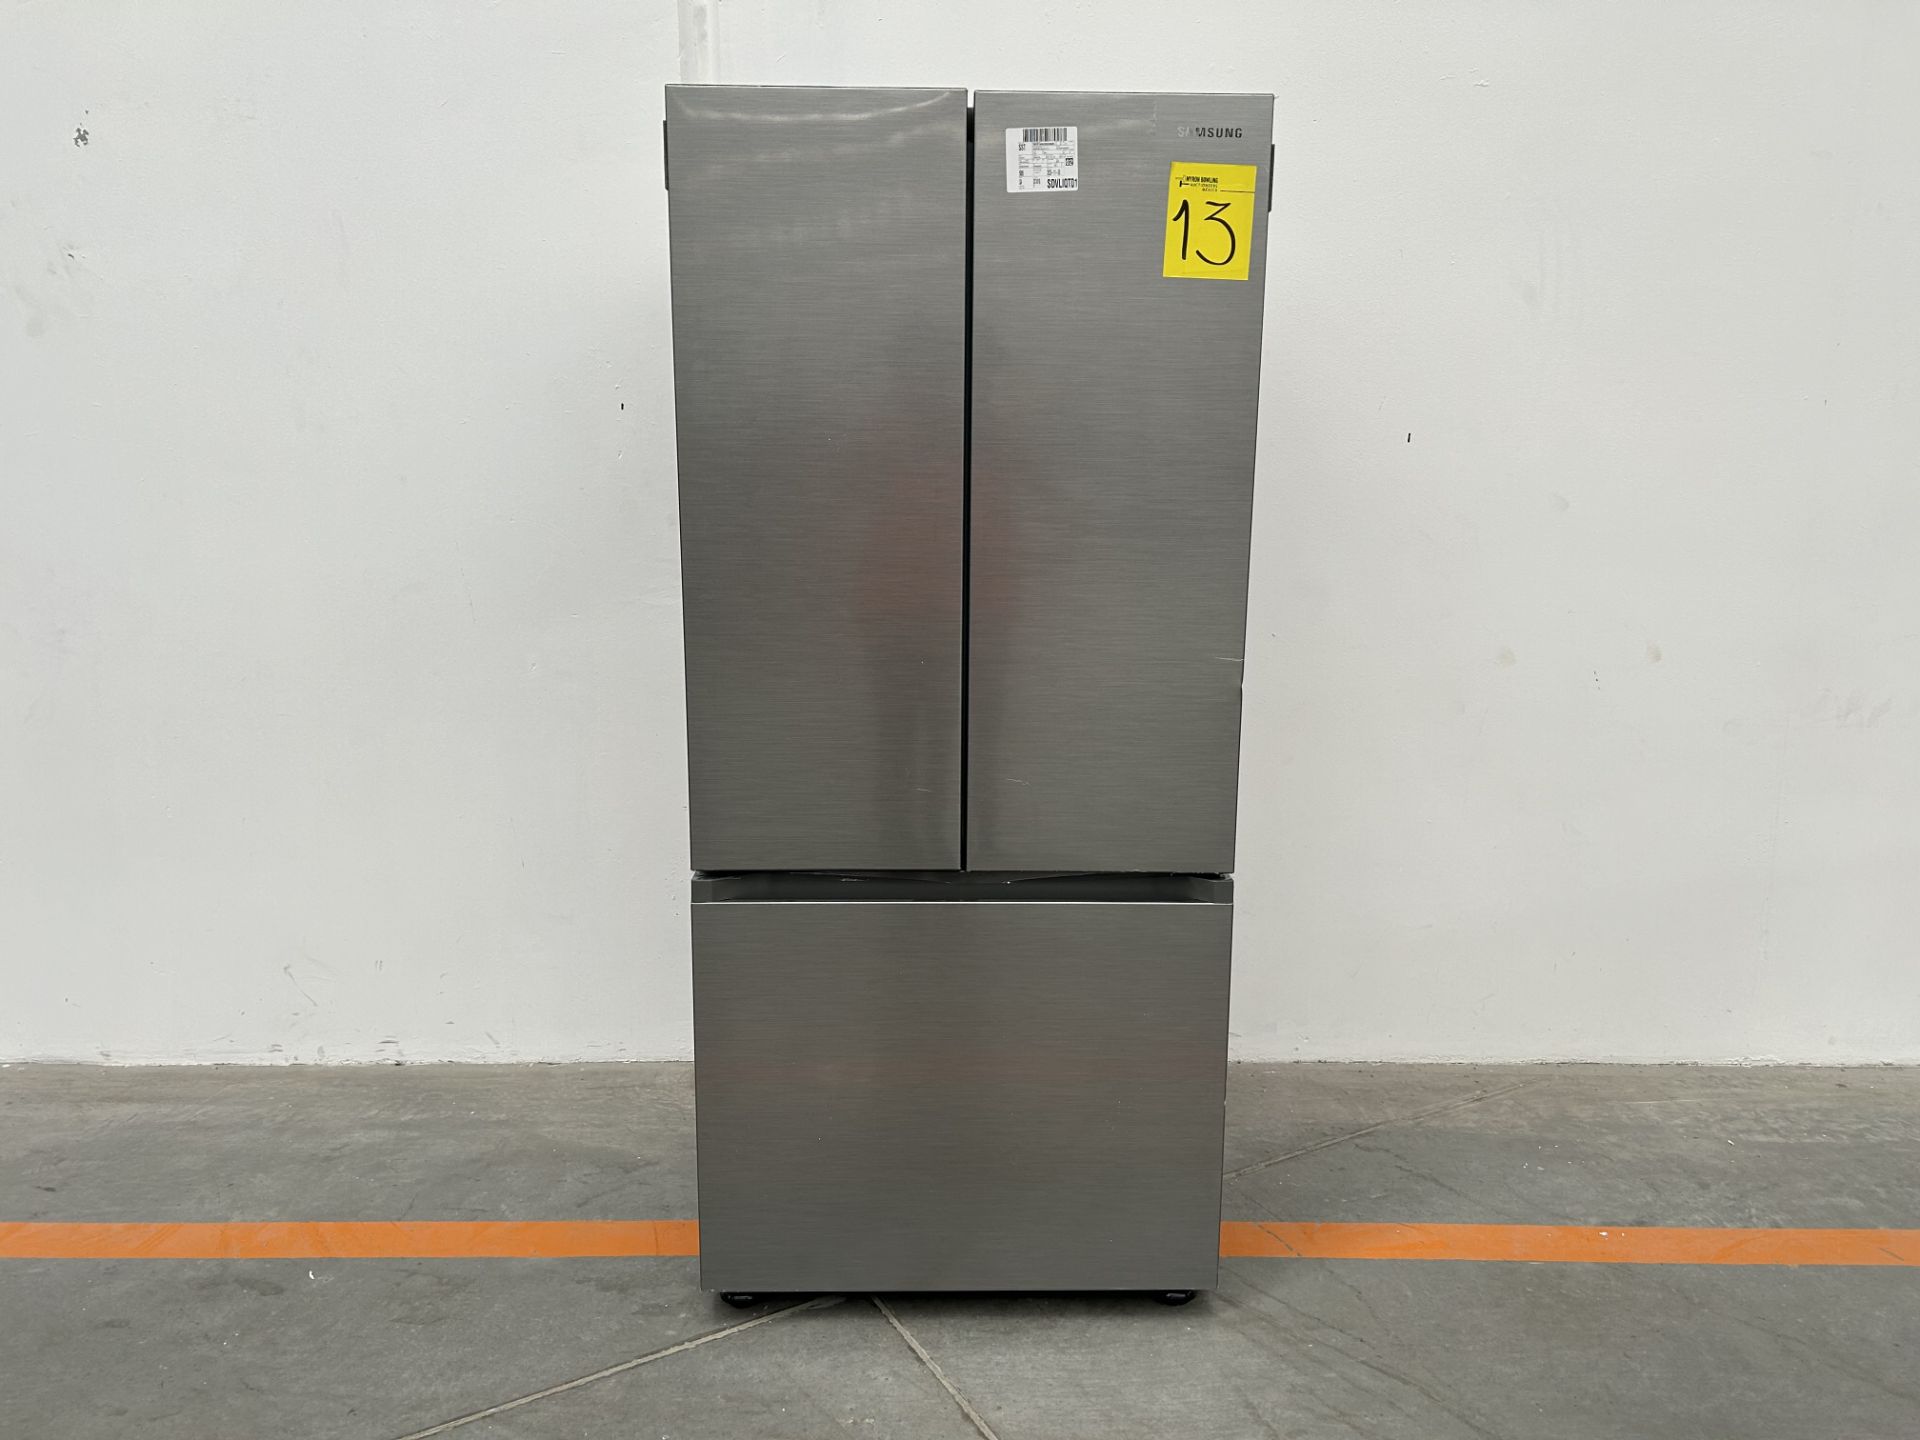 (NUEVO) Refrigerador Marca SAMSUNG, Modelo RF22A4010S9, Serie 00109H, Color GRIS